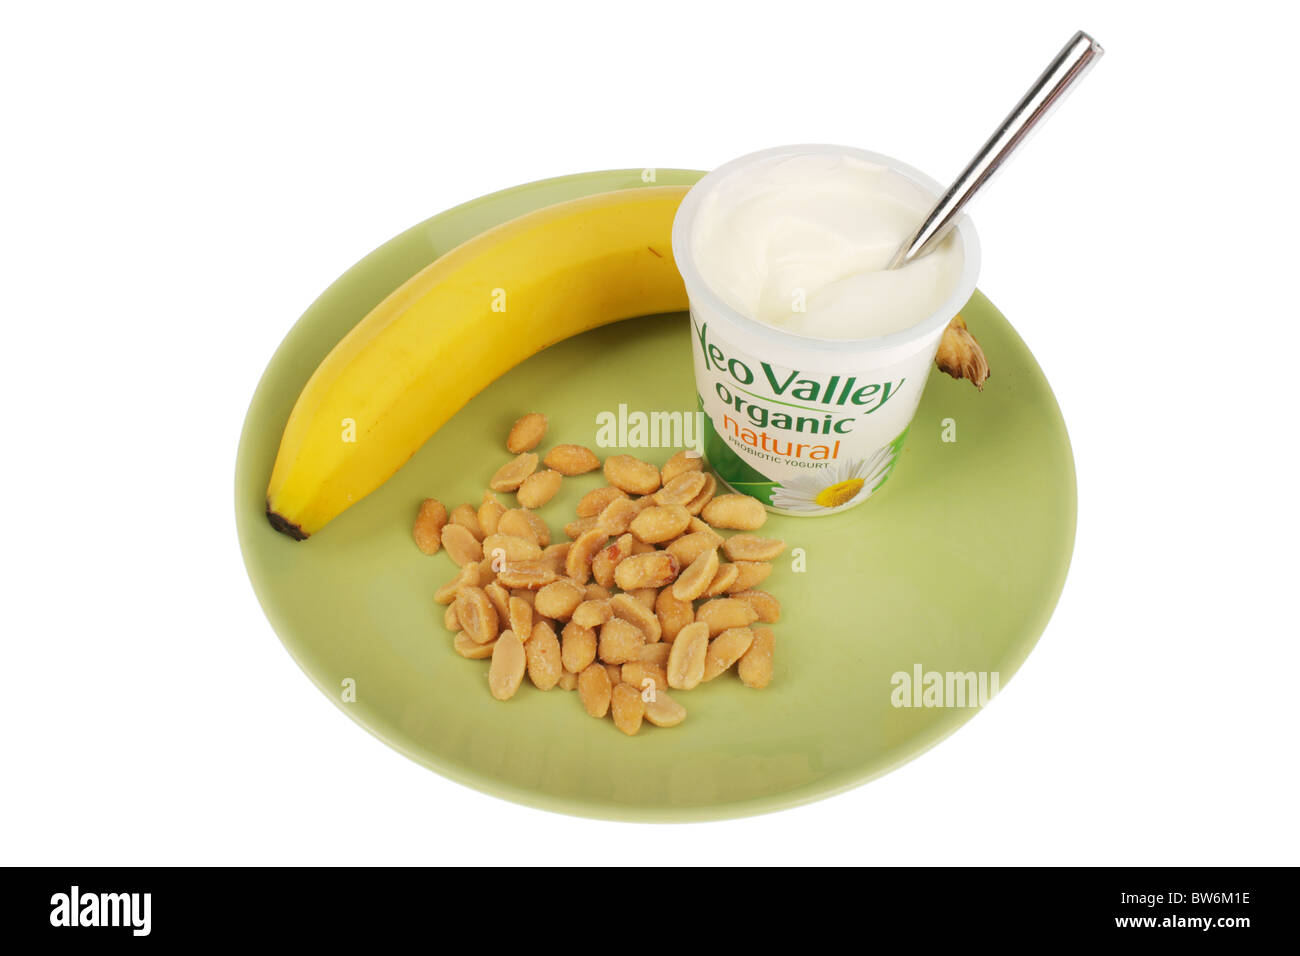 El yogur con plátano y cacahuetes salados Foto de stock